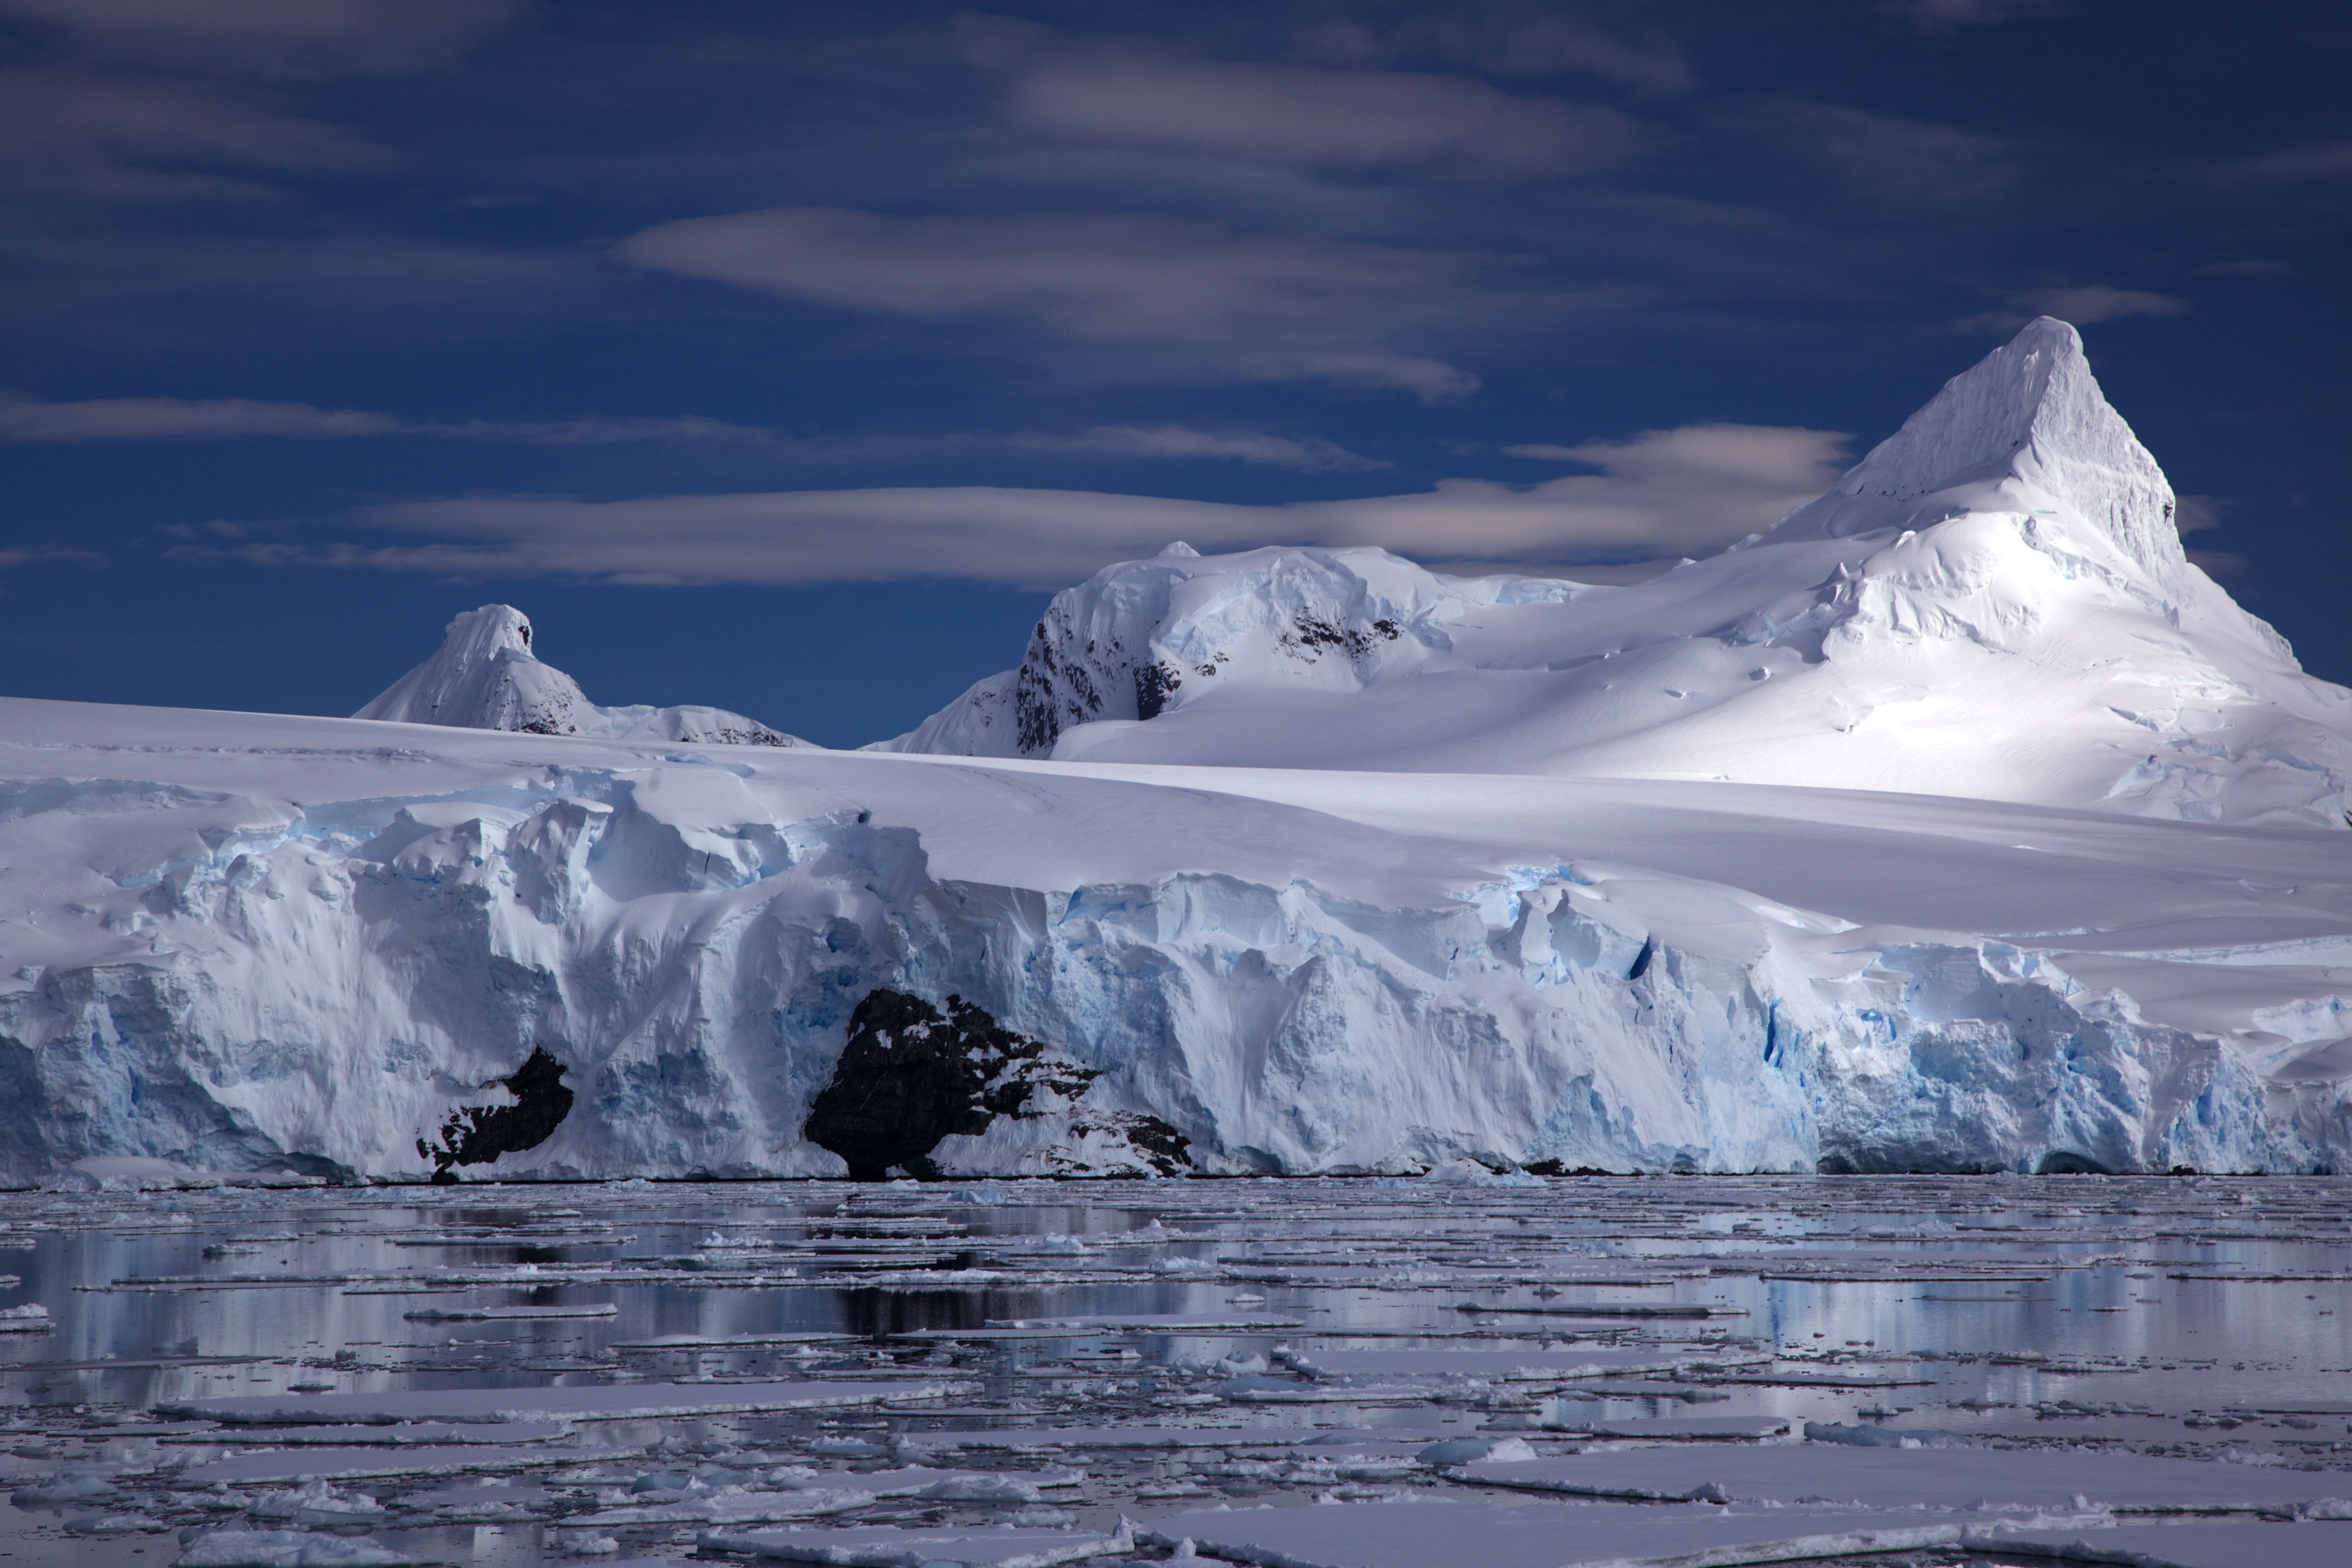 Антарктические широты. Антарктида. Горы Гамбурцева в Антарктиде. Ледяной Покров Антарктиды. Антарктида ледяной материк.